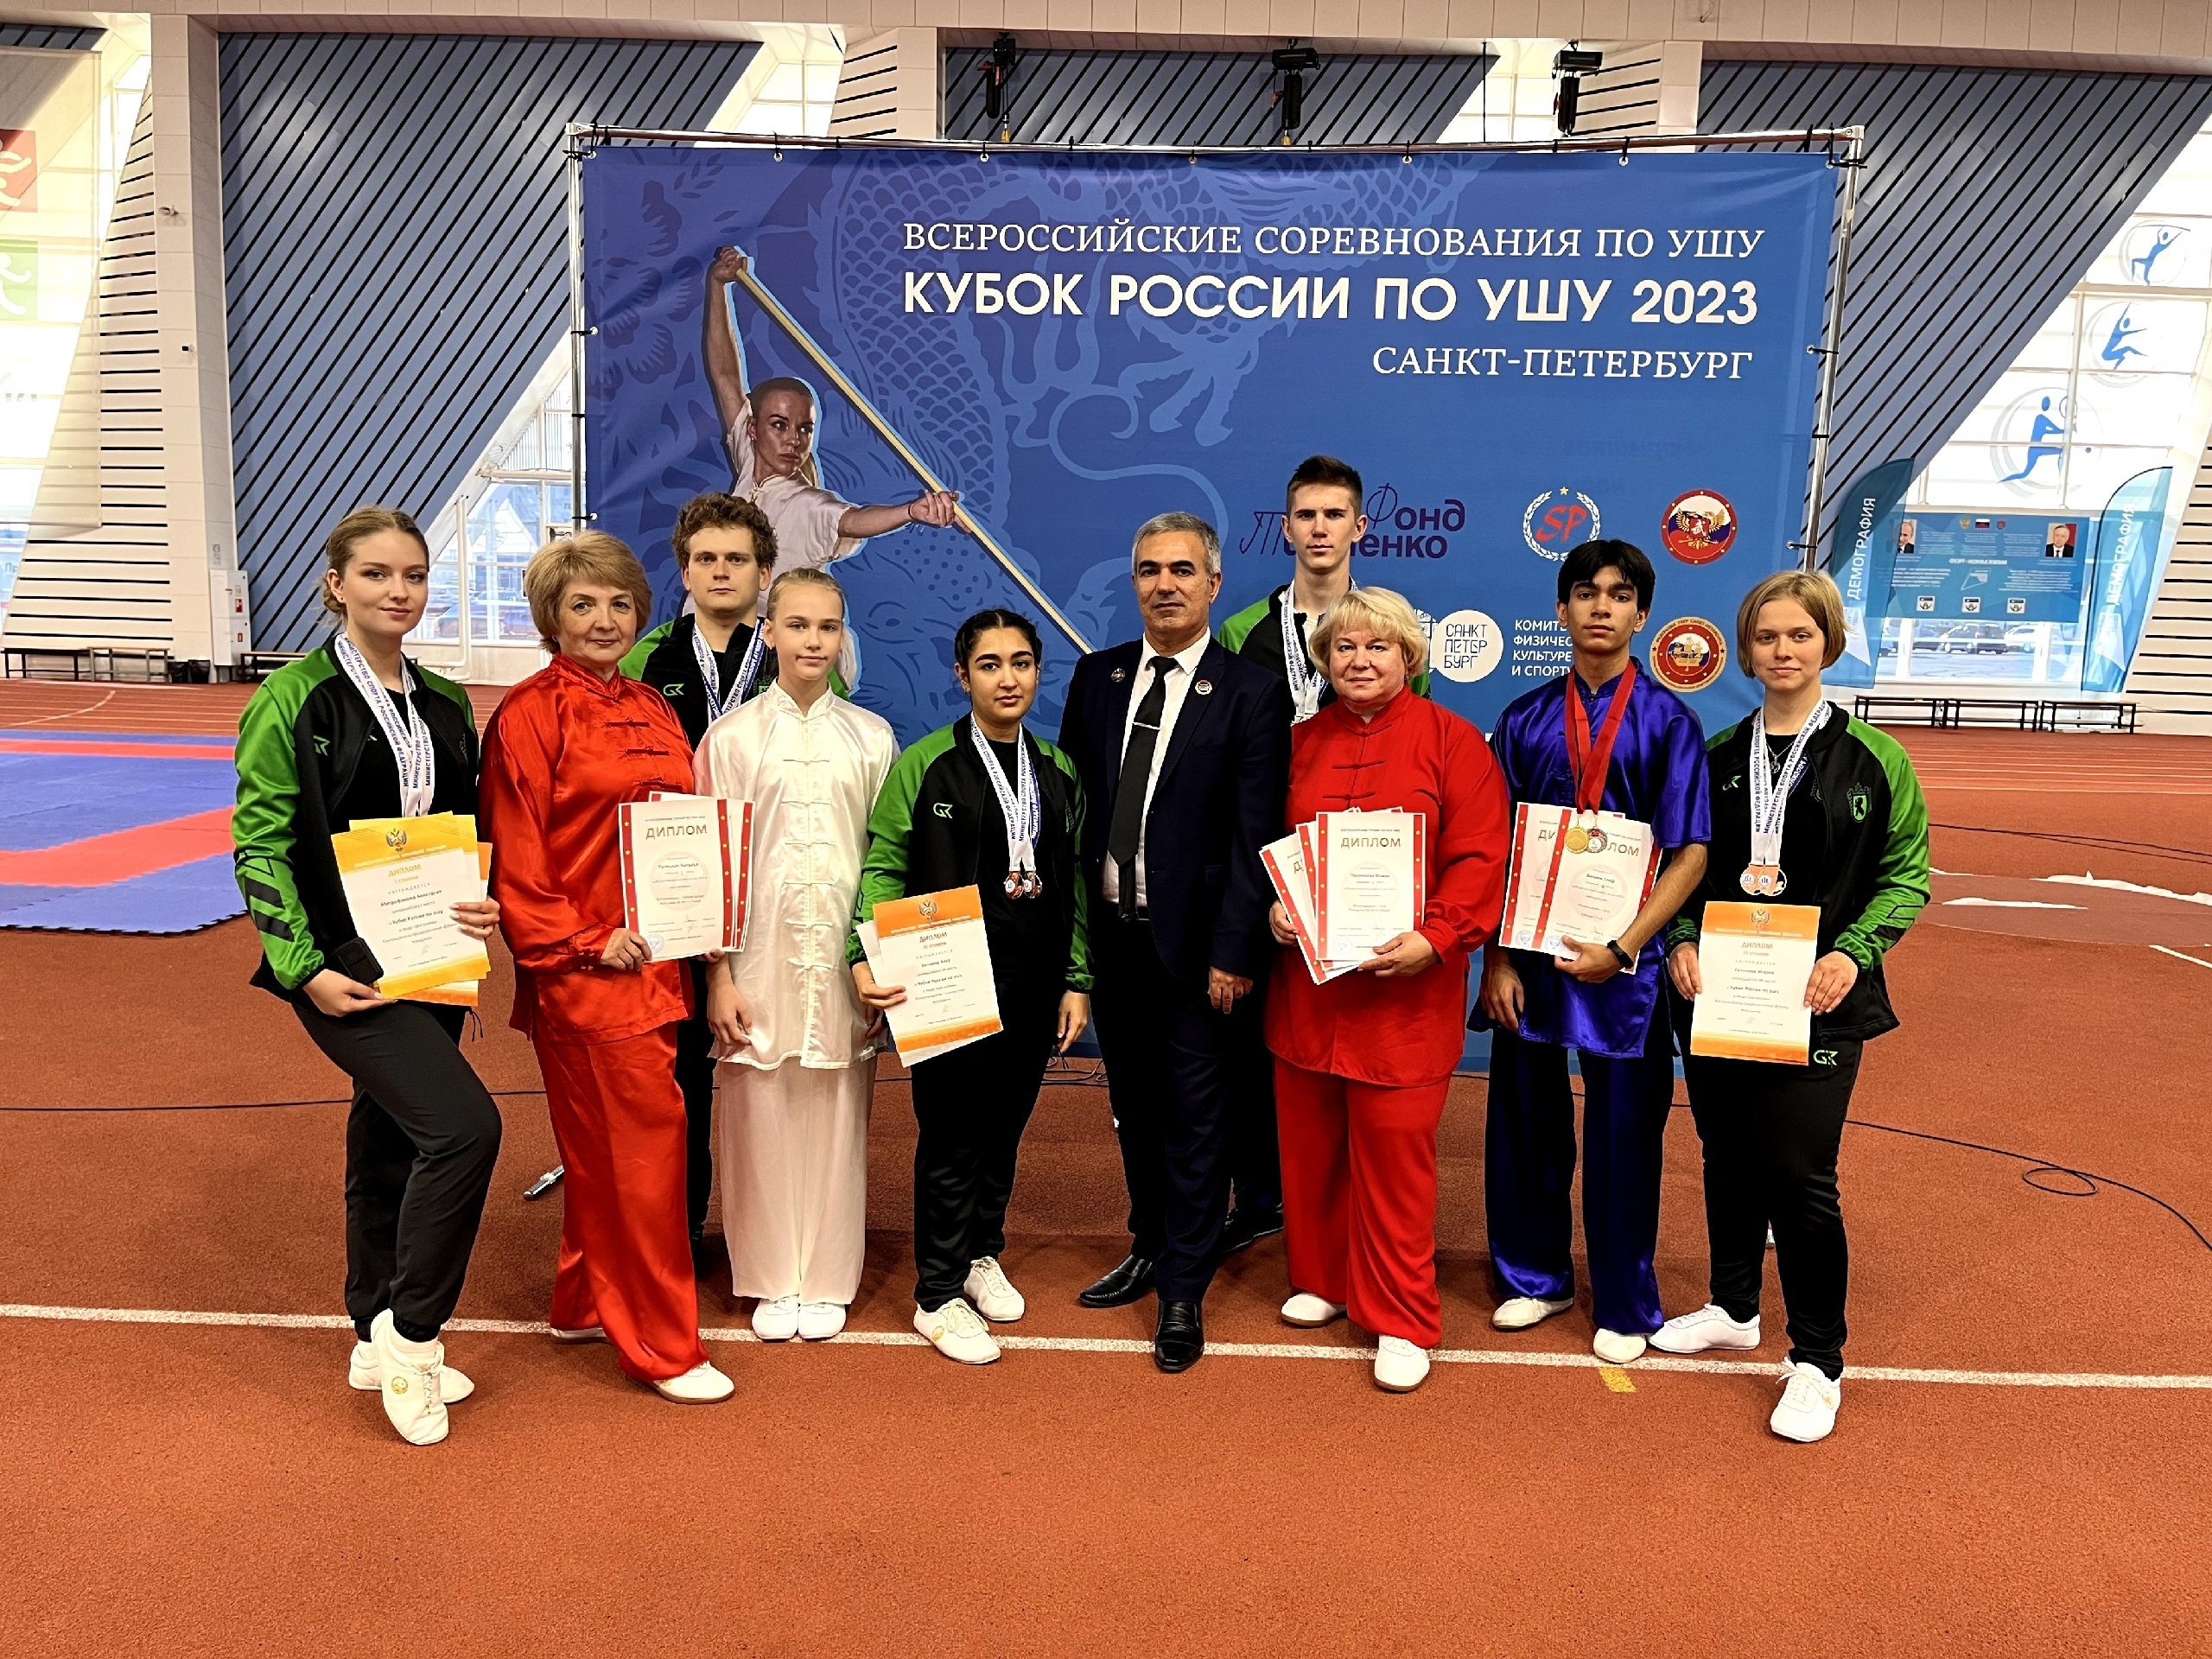 Ушуисты Карелии покорили Крестовский остров на всероссийских соревнованиях